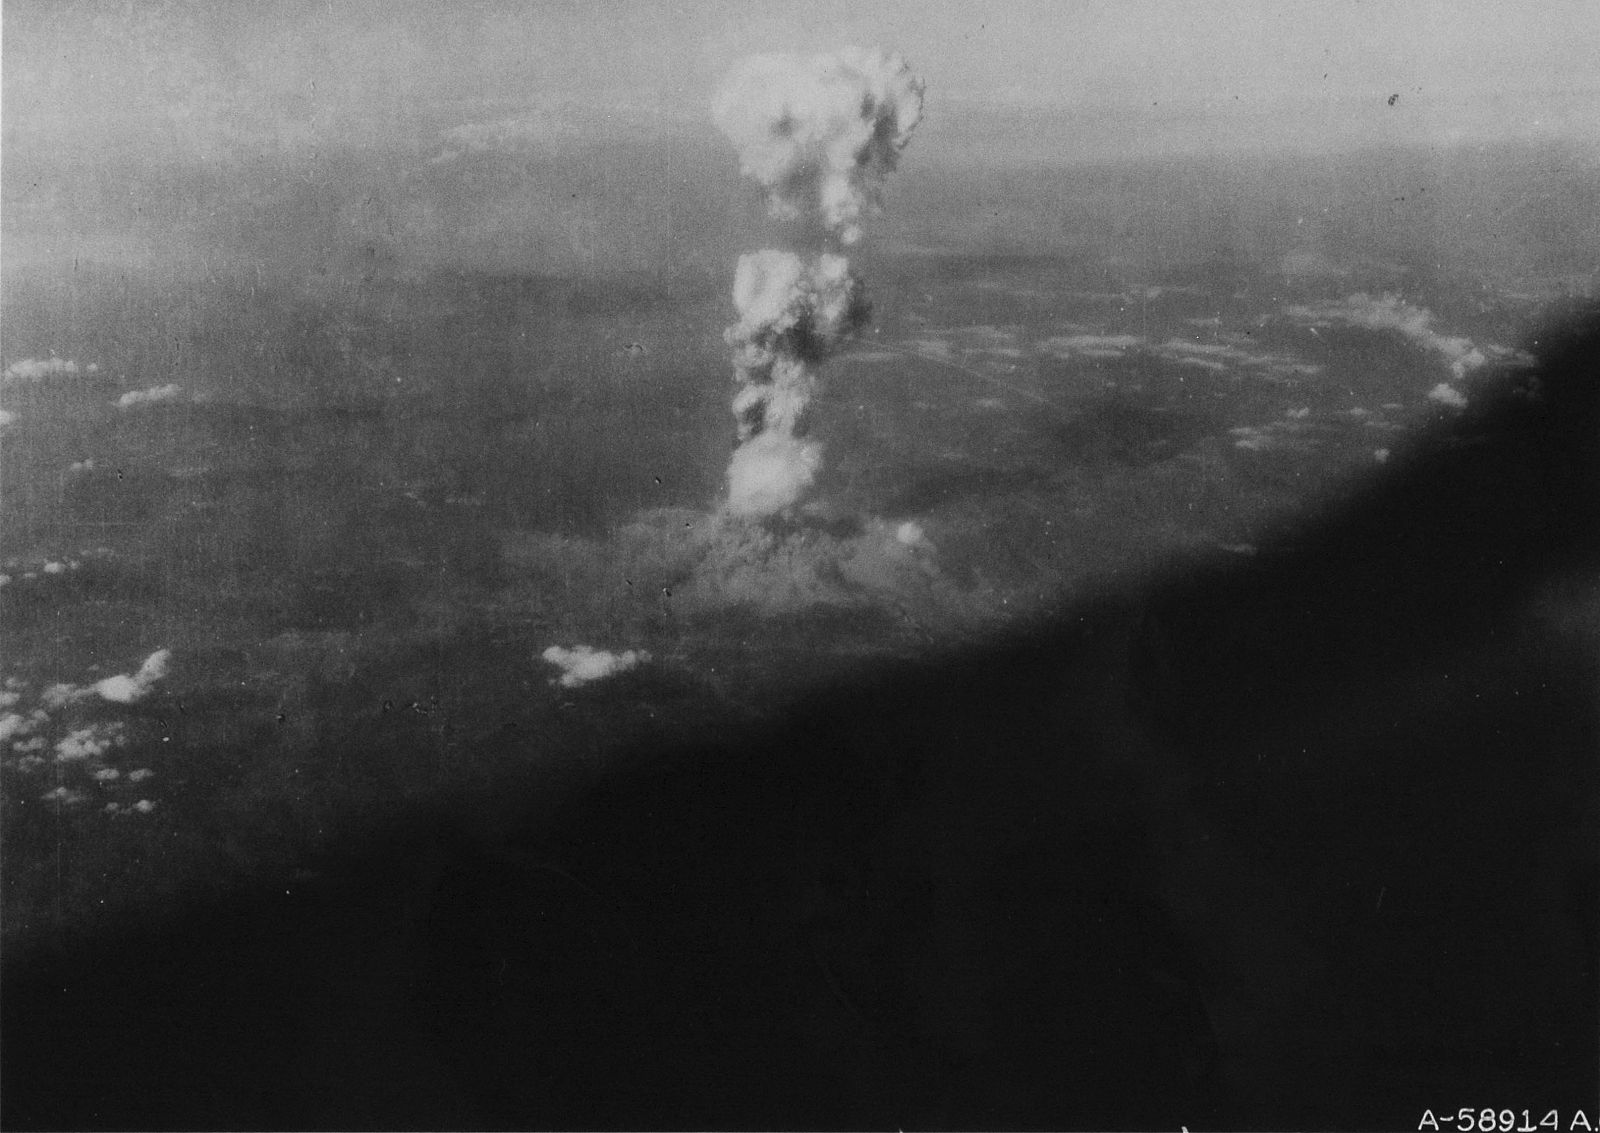 Fotografía inédita de la nube con forma de hongo formada tras el impacto de la bomba atómica sobre la ciudad de Hiroshima el 6 de agosto de 1945.